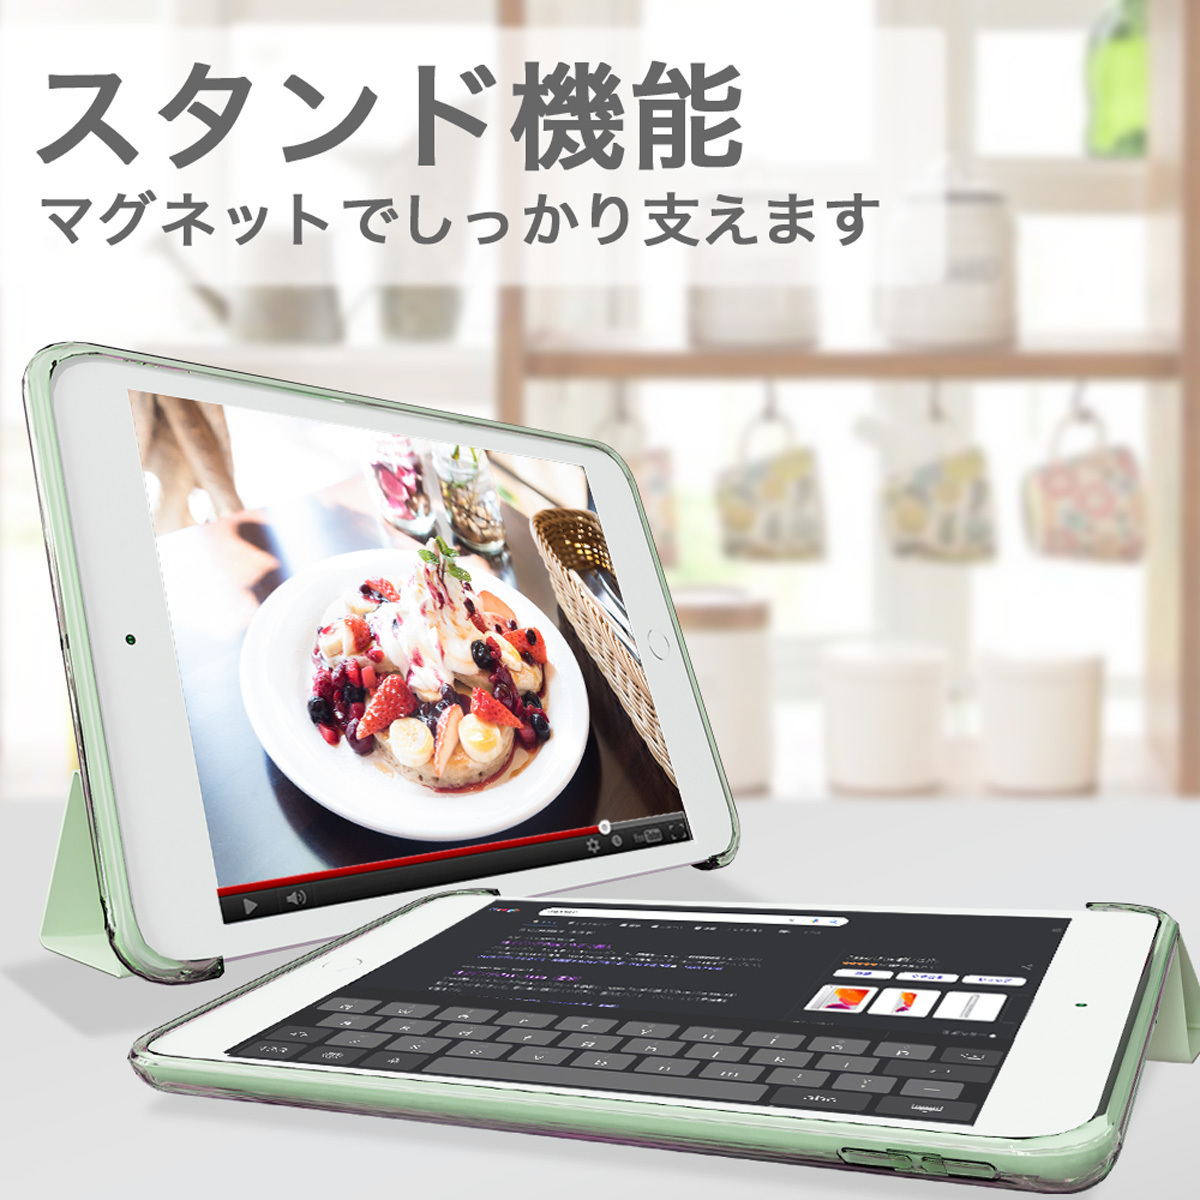 【訳あり】新品 MS factory iPad mini5 アイパッド ミニ 5 ソフトフレーム スマート TPU カバー スタンド ケース / ティーグリーン D1_スタンド機能